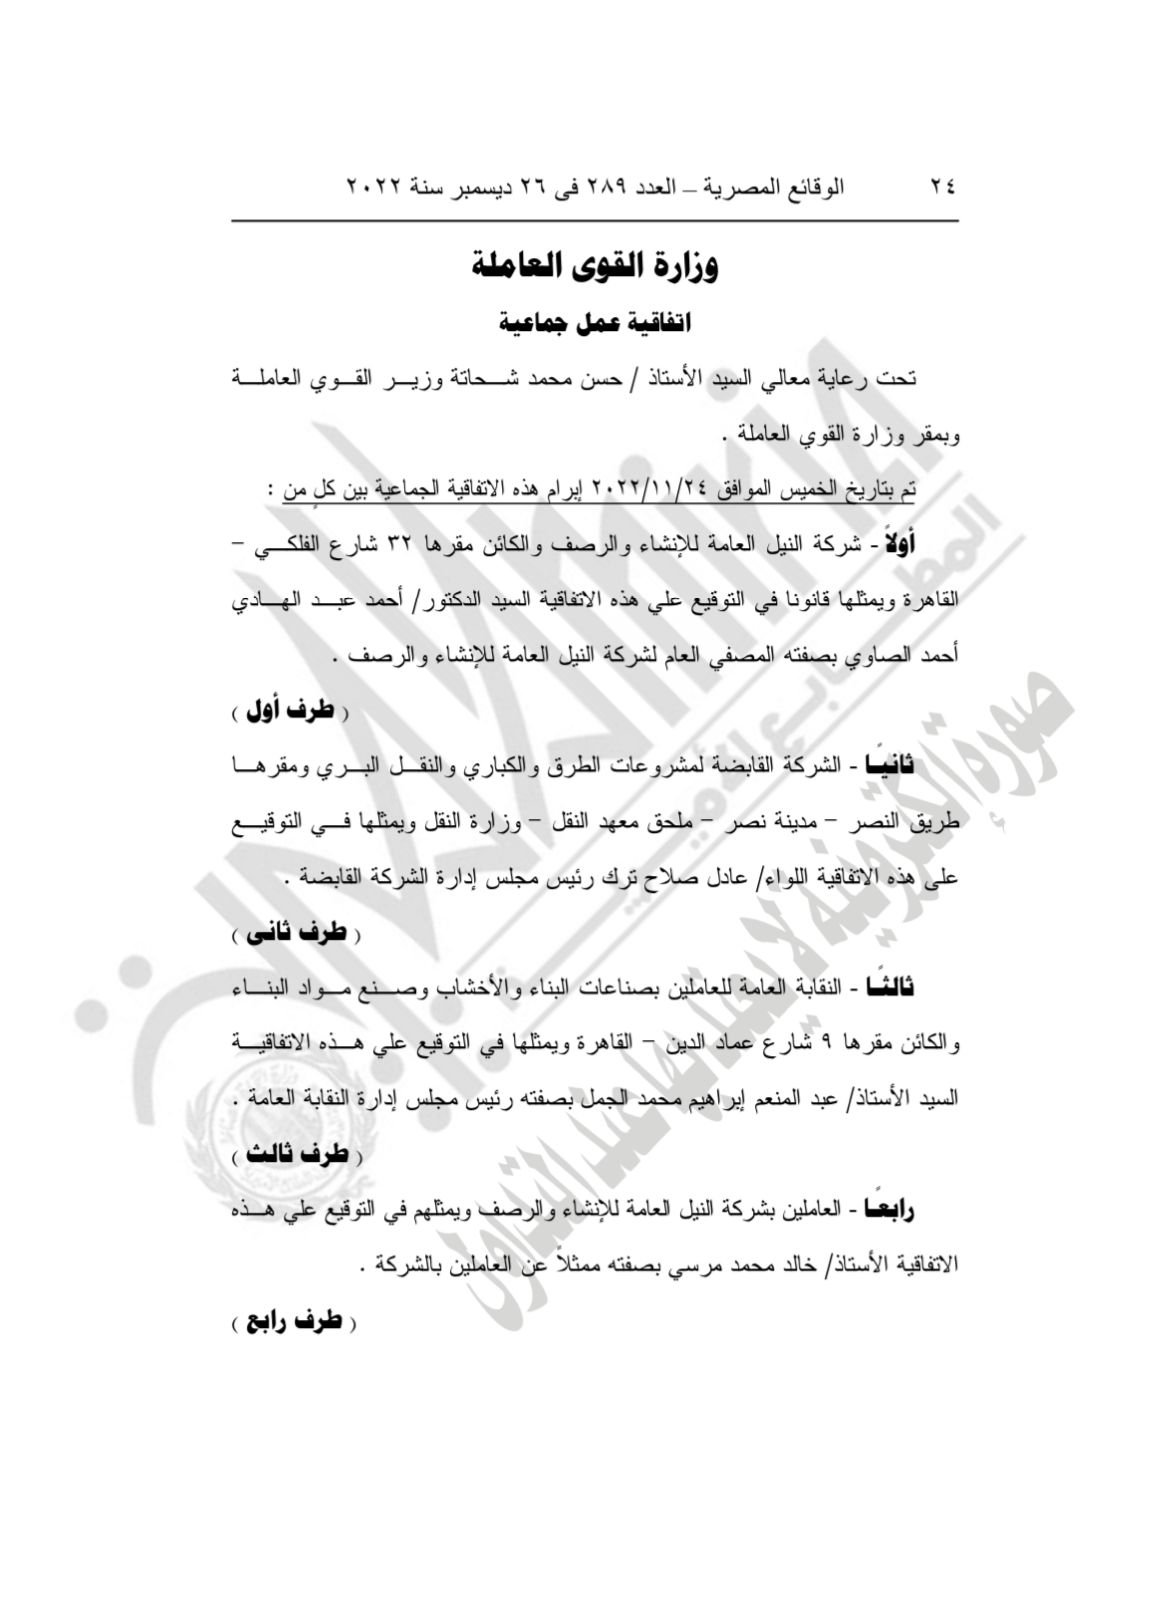 نص اتفاقية عمل لصرف مستحقات عمال النيل للإنشاء والرصف 1